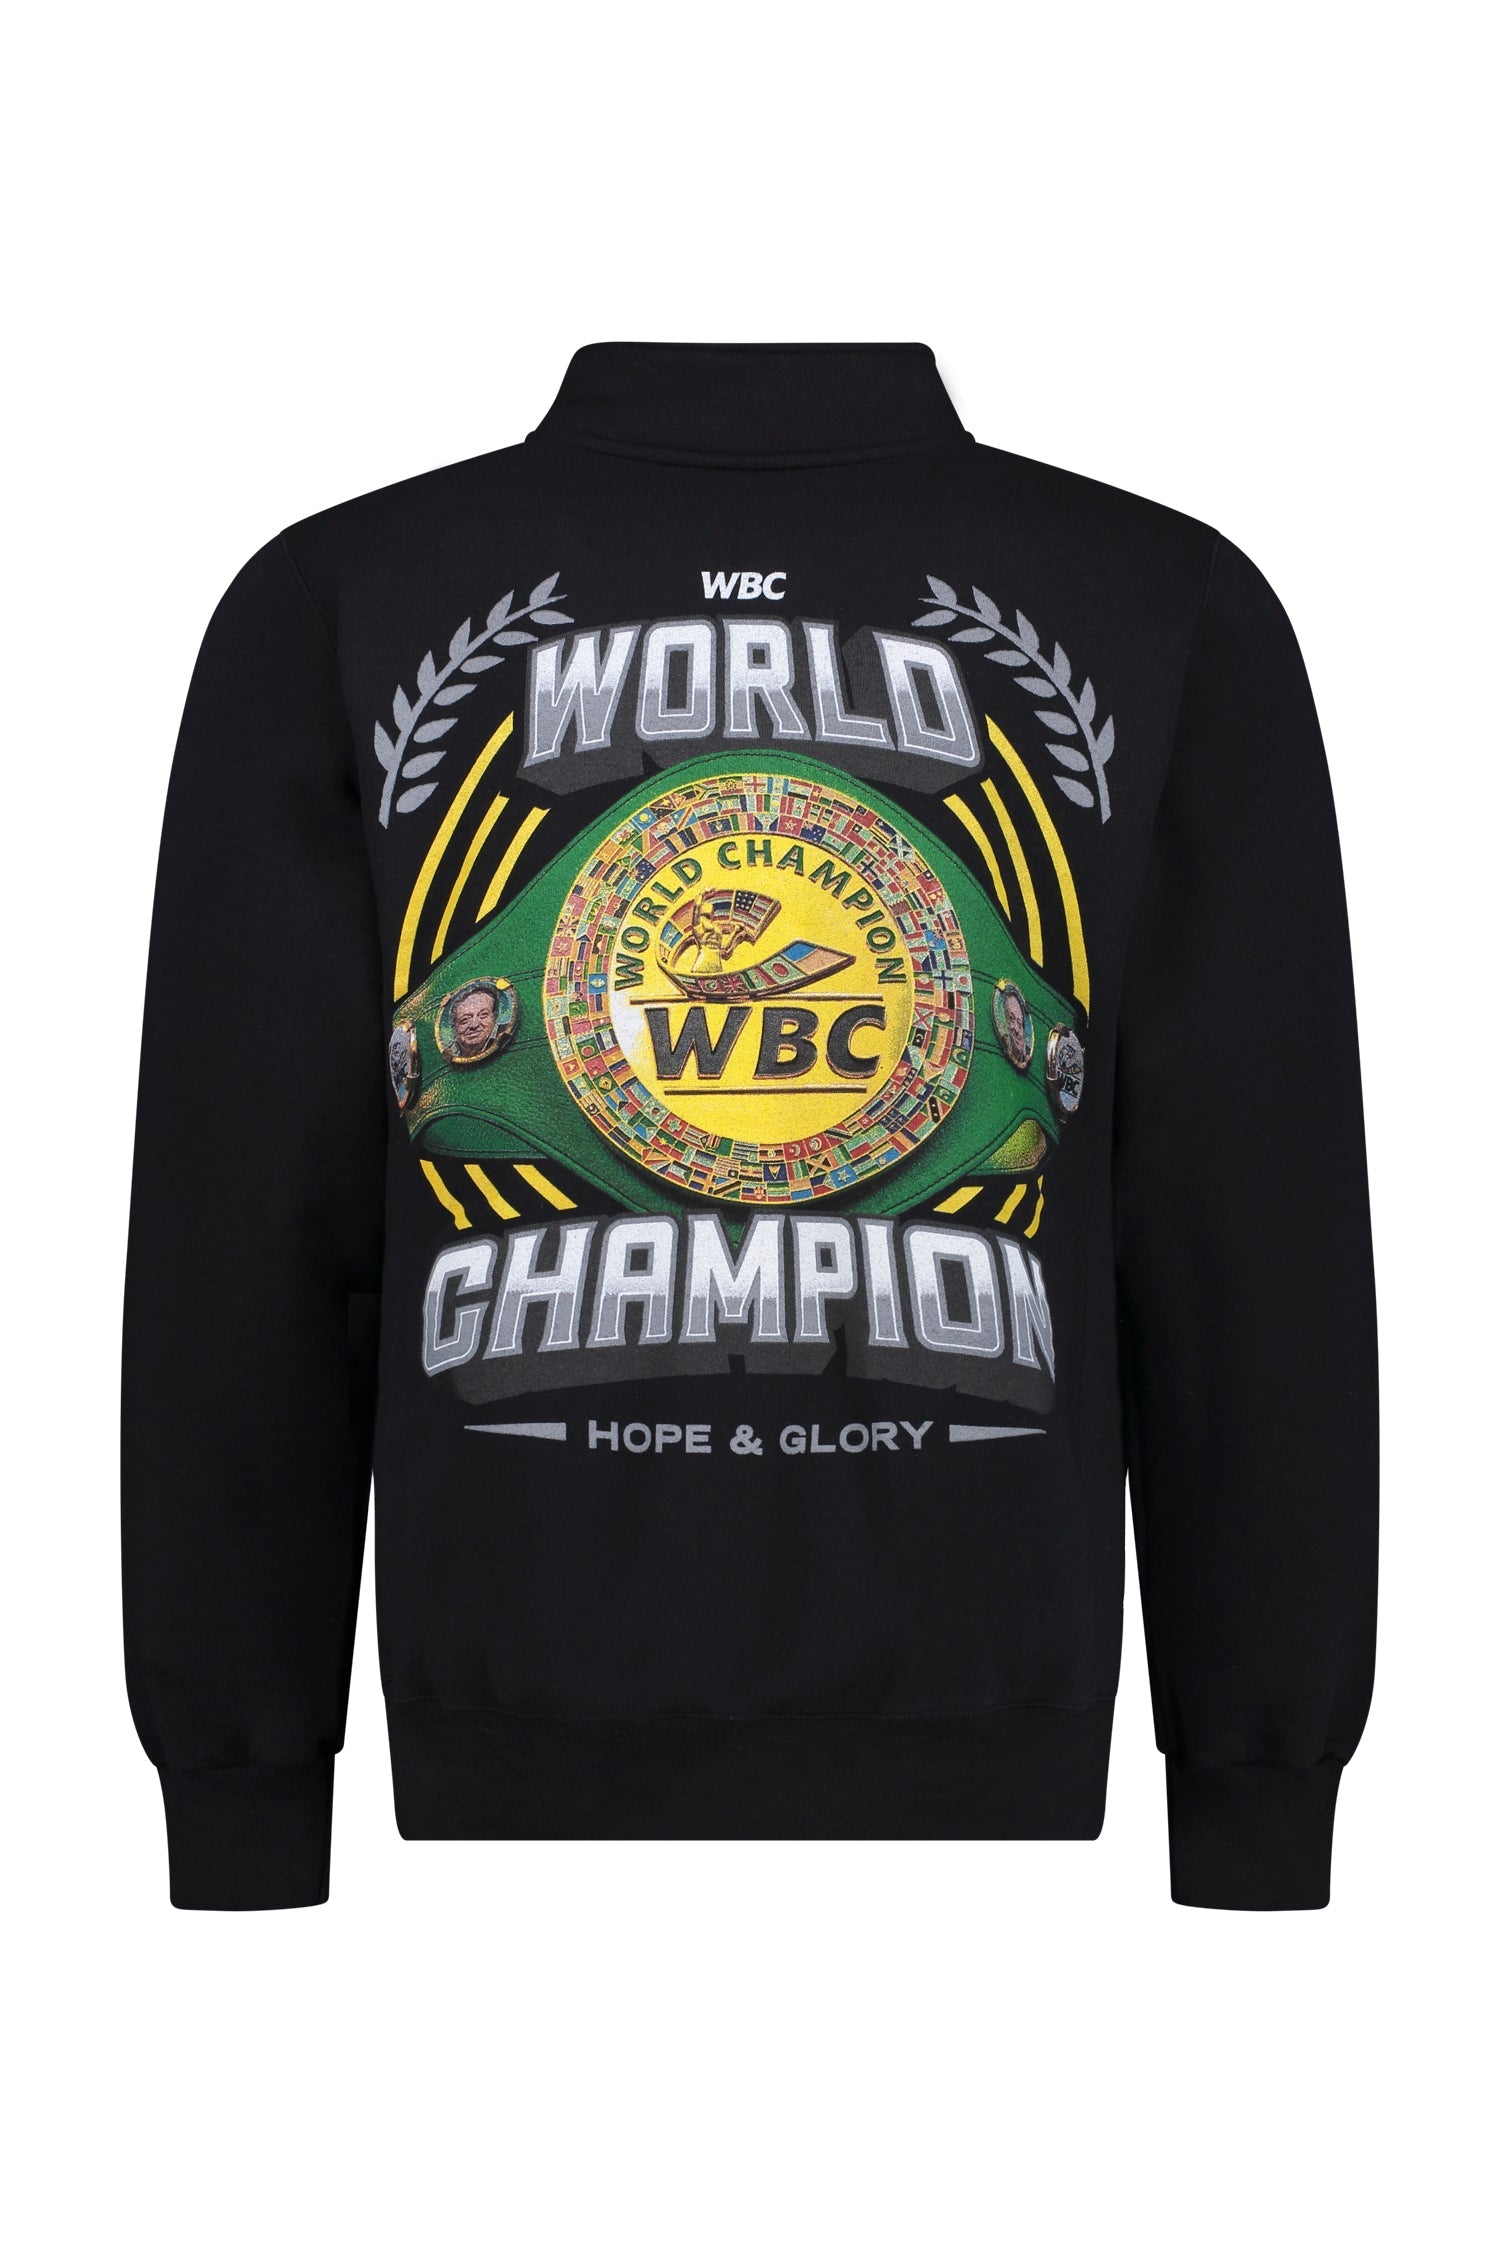 WBC Store S World Champion Sweatshirt